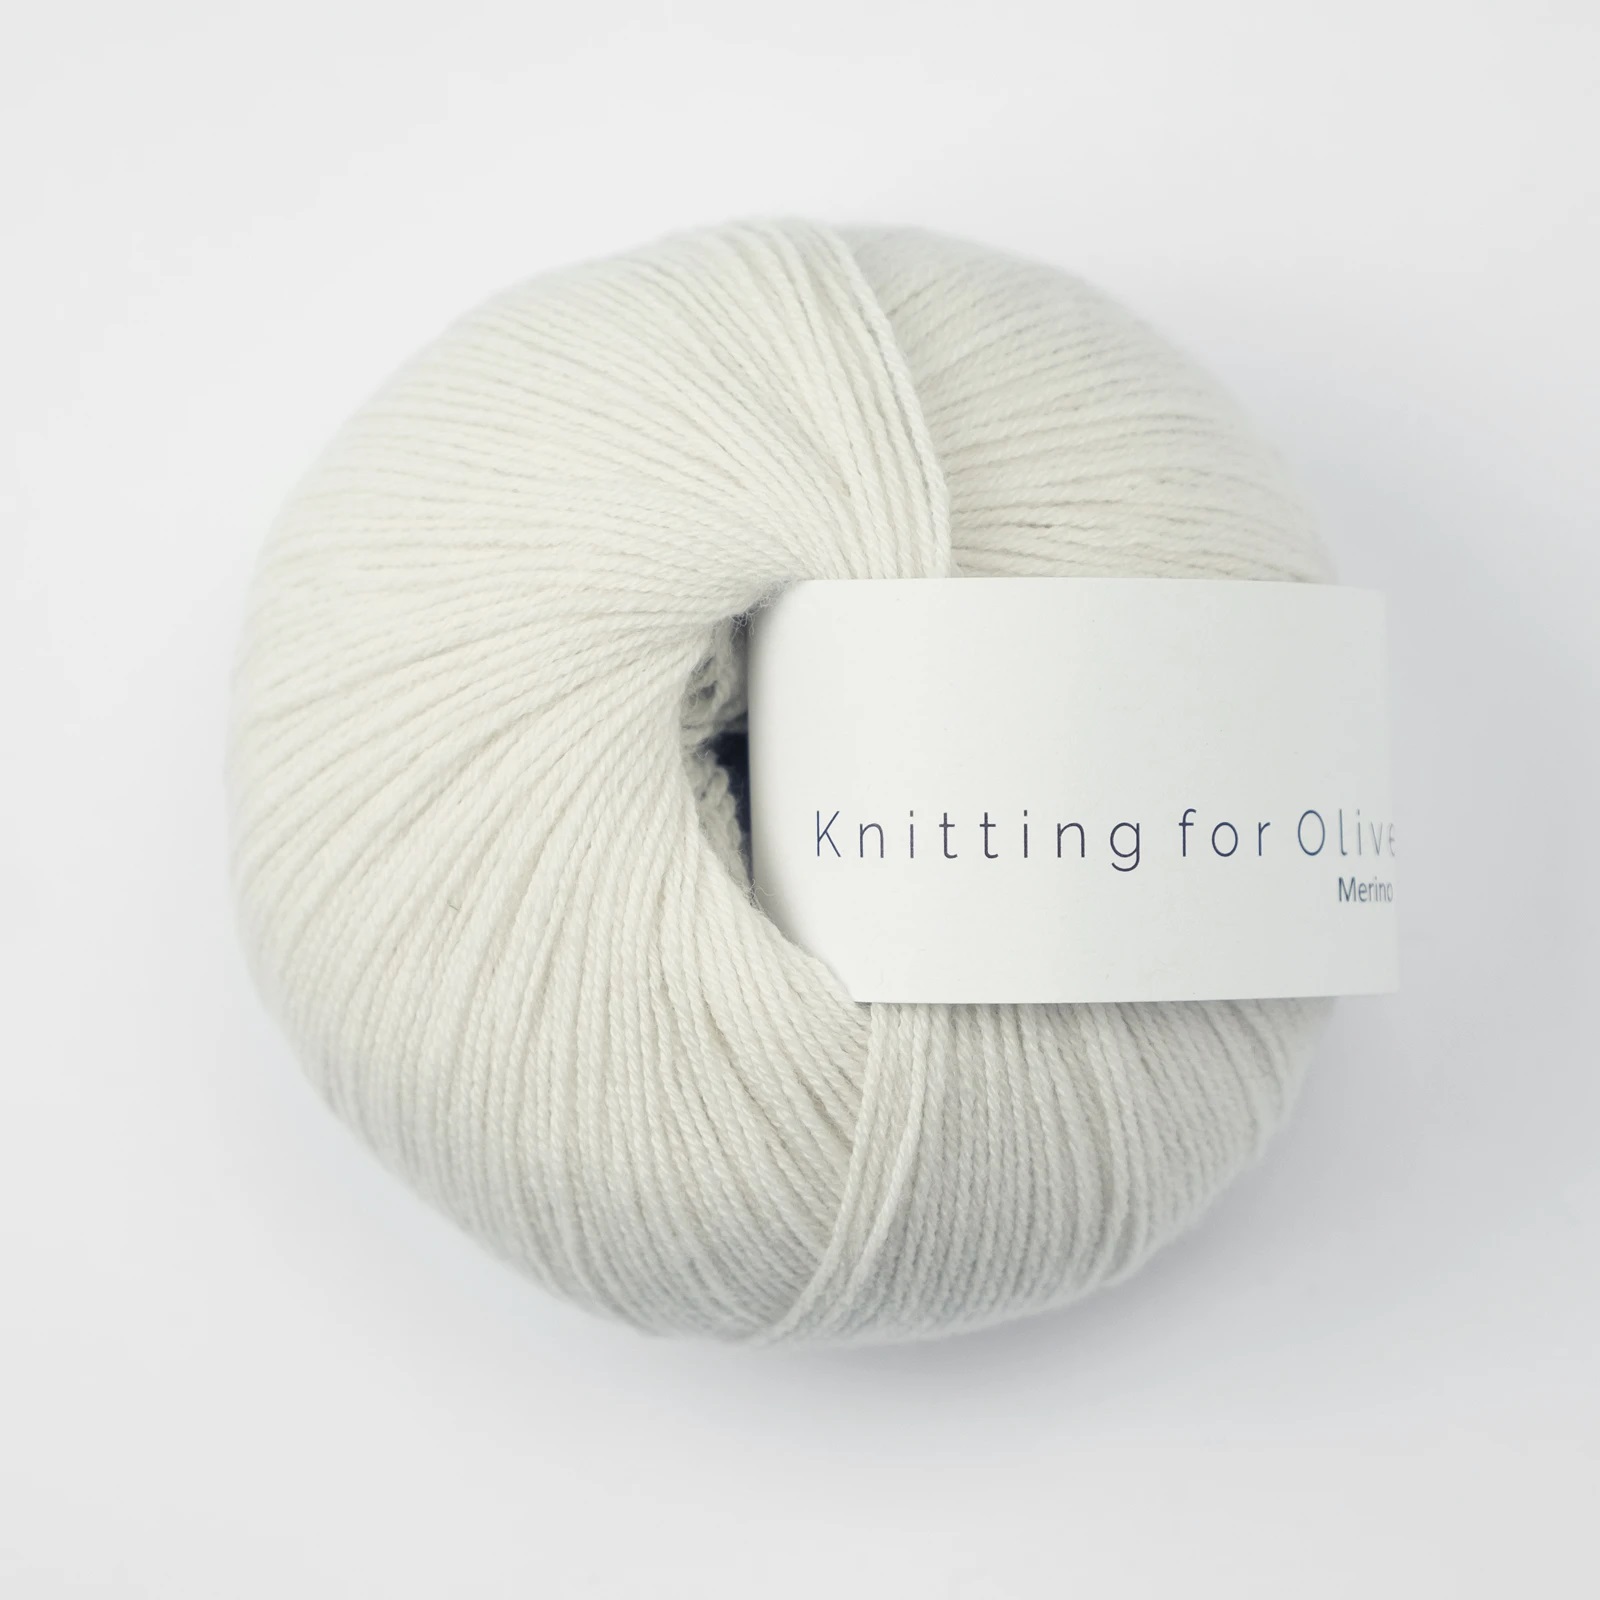 Knitting_for_olive_merino_Floede